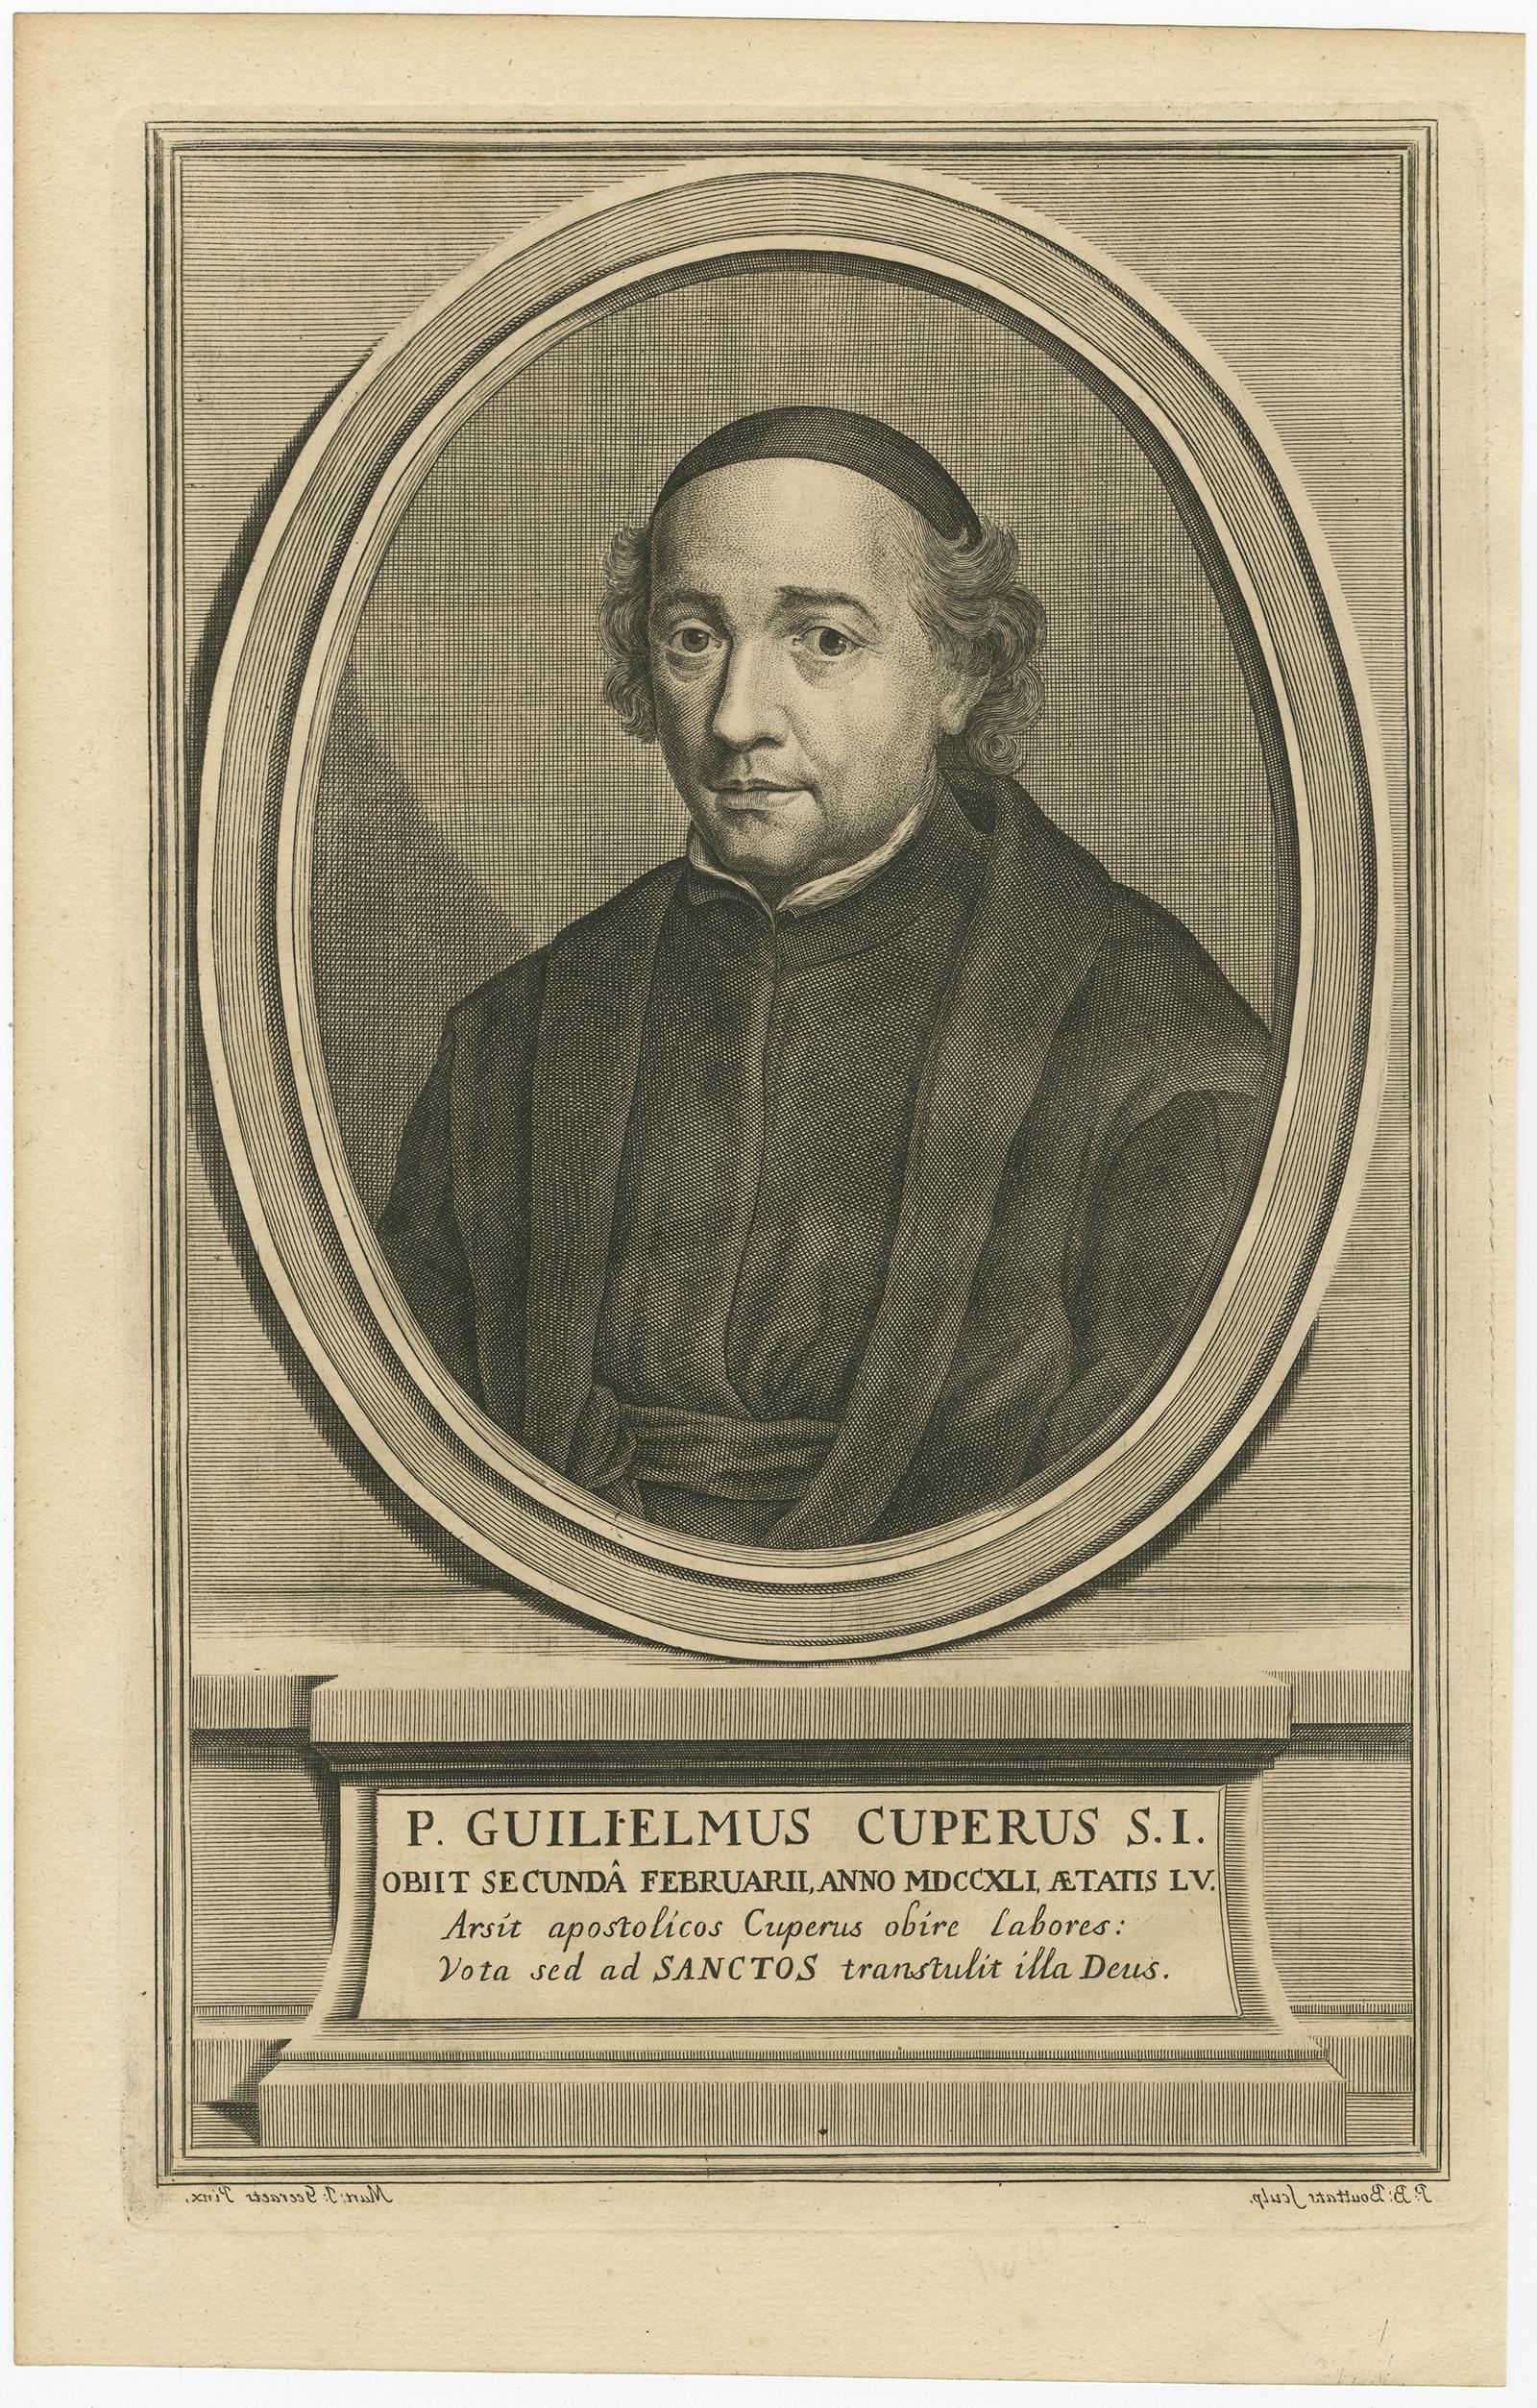 Gravure ancienne, titrée : 'P. Guilielmus Cuperus (...)' - Portrait du jésuite Willem (Guilielmus) Cuperus (1686 - 1741).

Source inconnue, à déterminer.

Artistes et graveurs : Réalisé par 